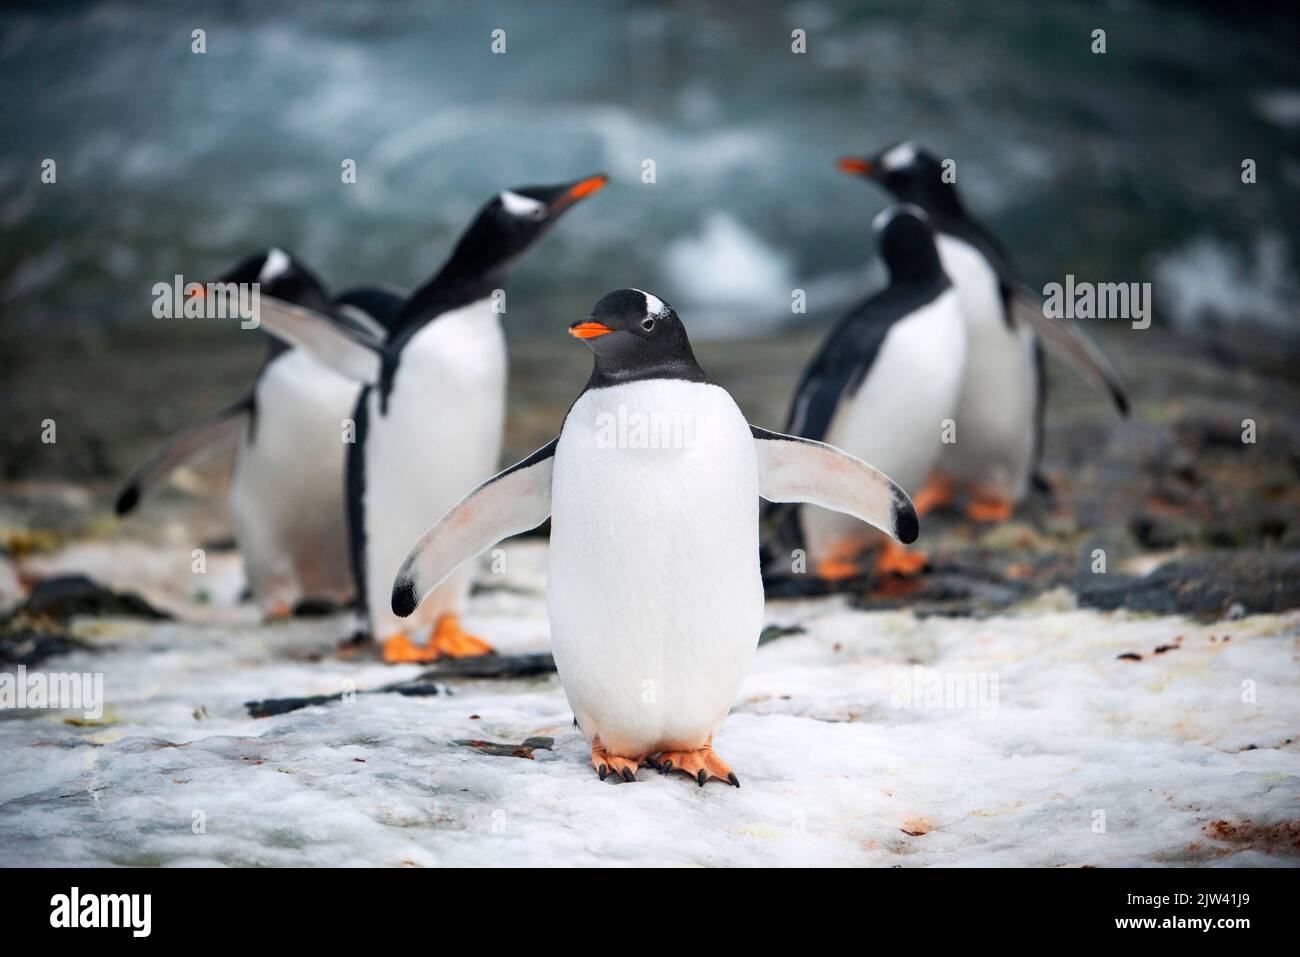 Pingouins à la station Vernadsky sur l'île de Galindez, Antarctique. Fusion des pôles. L'Antarctique est le continent qui souffre le plus de la guerre mondiale Banque D'Images